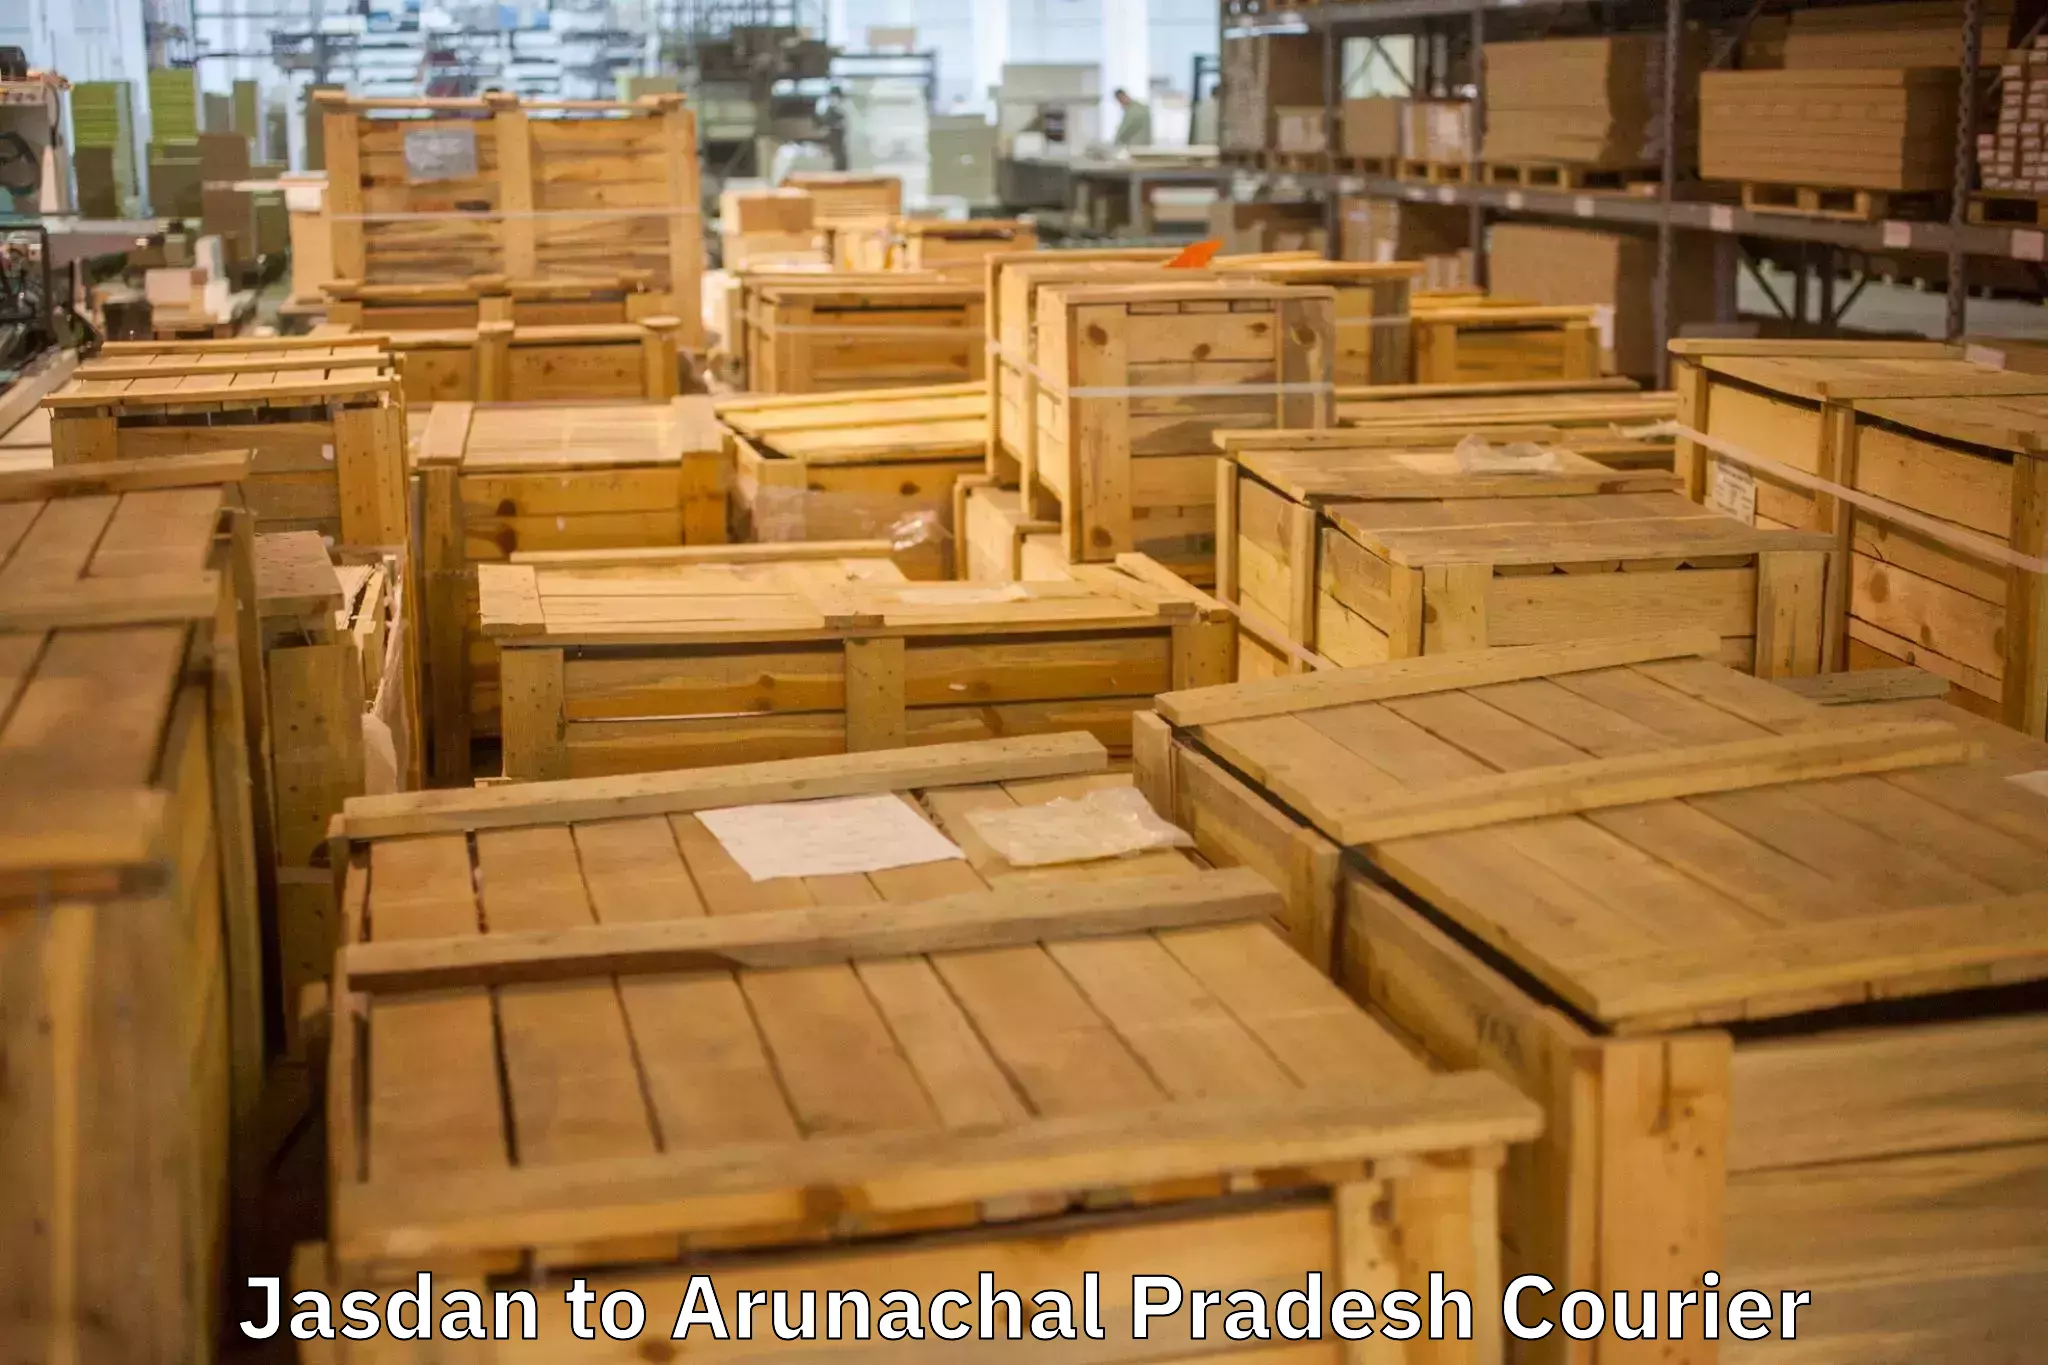 Furniture relocation experts in Jasdan to Arunachal Pradesh